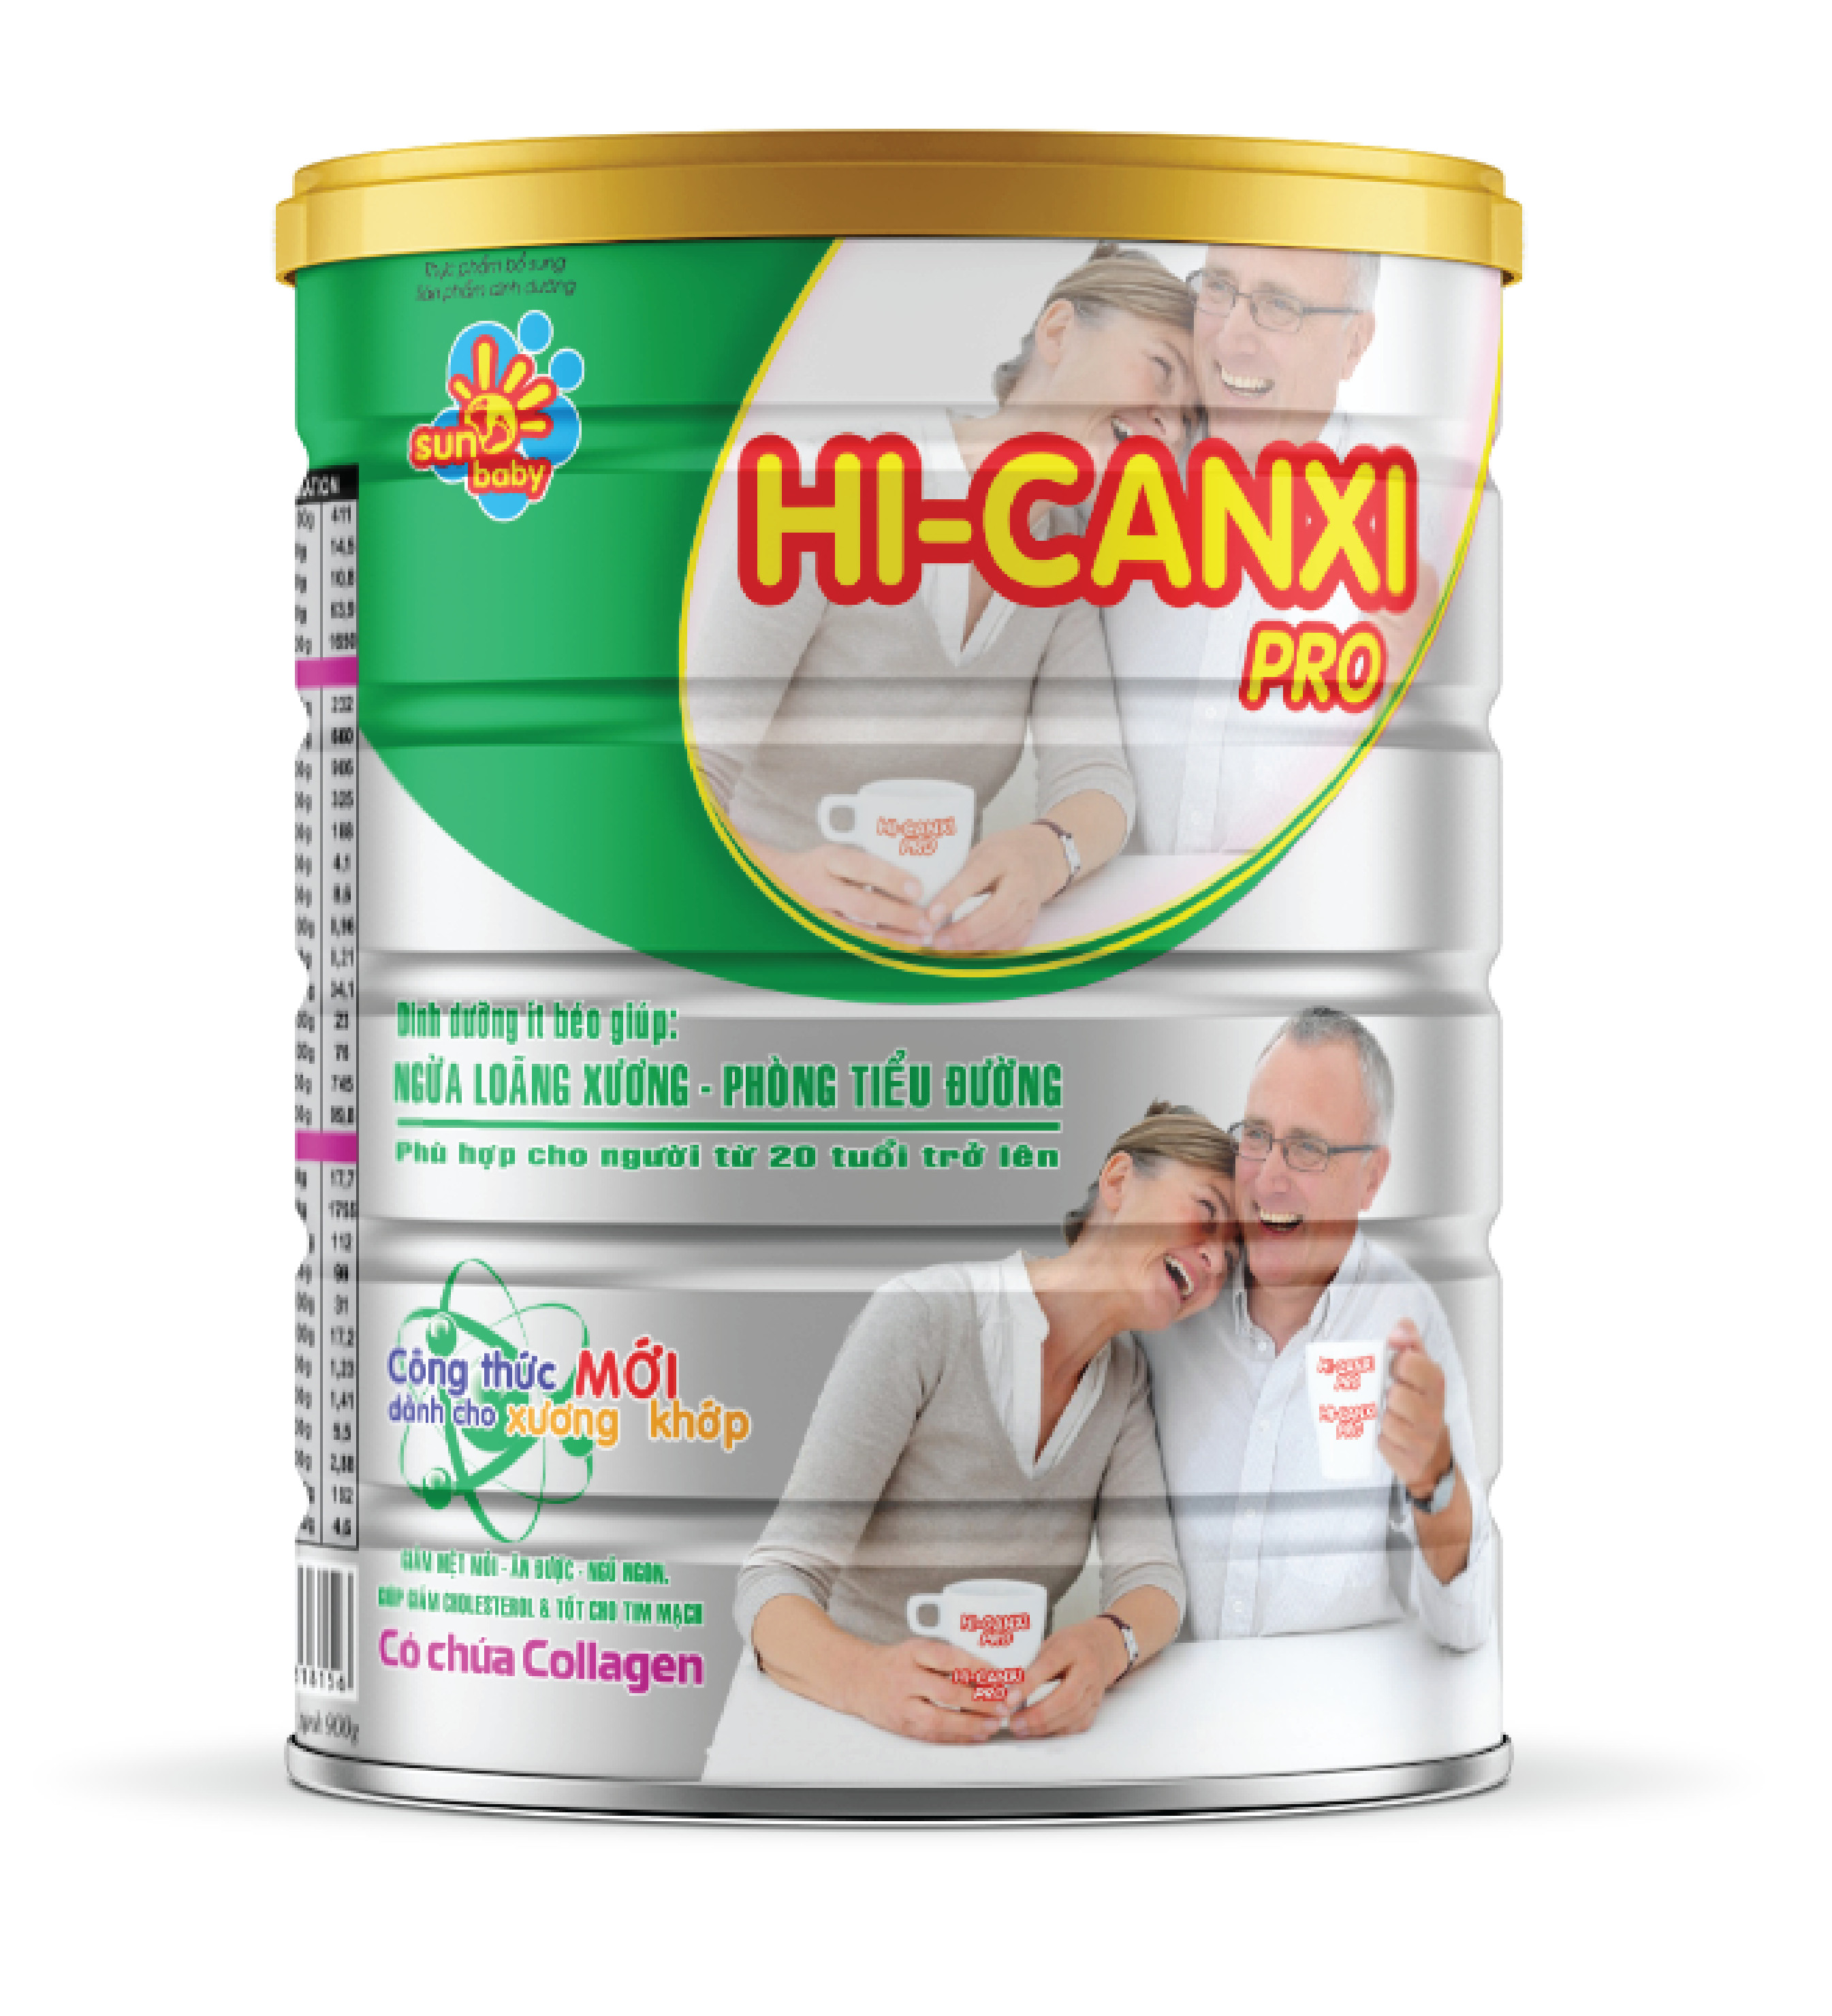 [Tặng 2 thảm massage chân] Combo 2 lon sữa Hi-canxi Pro ngăn ngừa loãng xương, phòng tiểu đường 900g Sunbaby